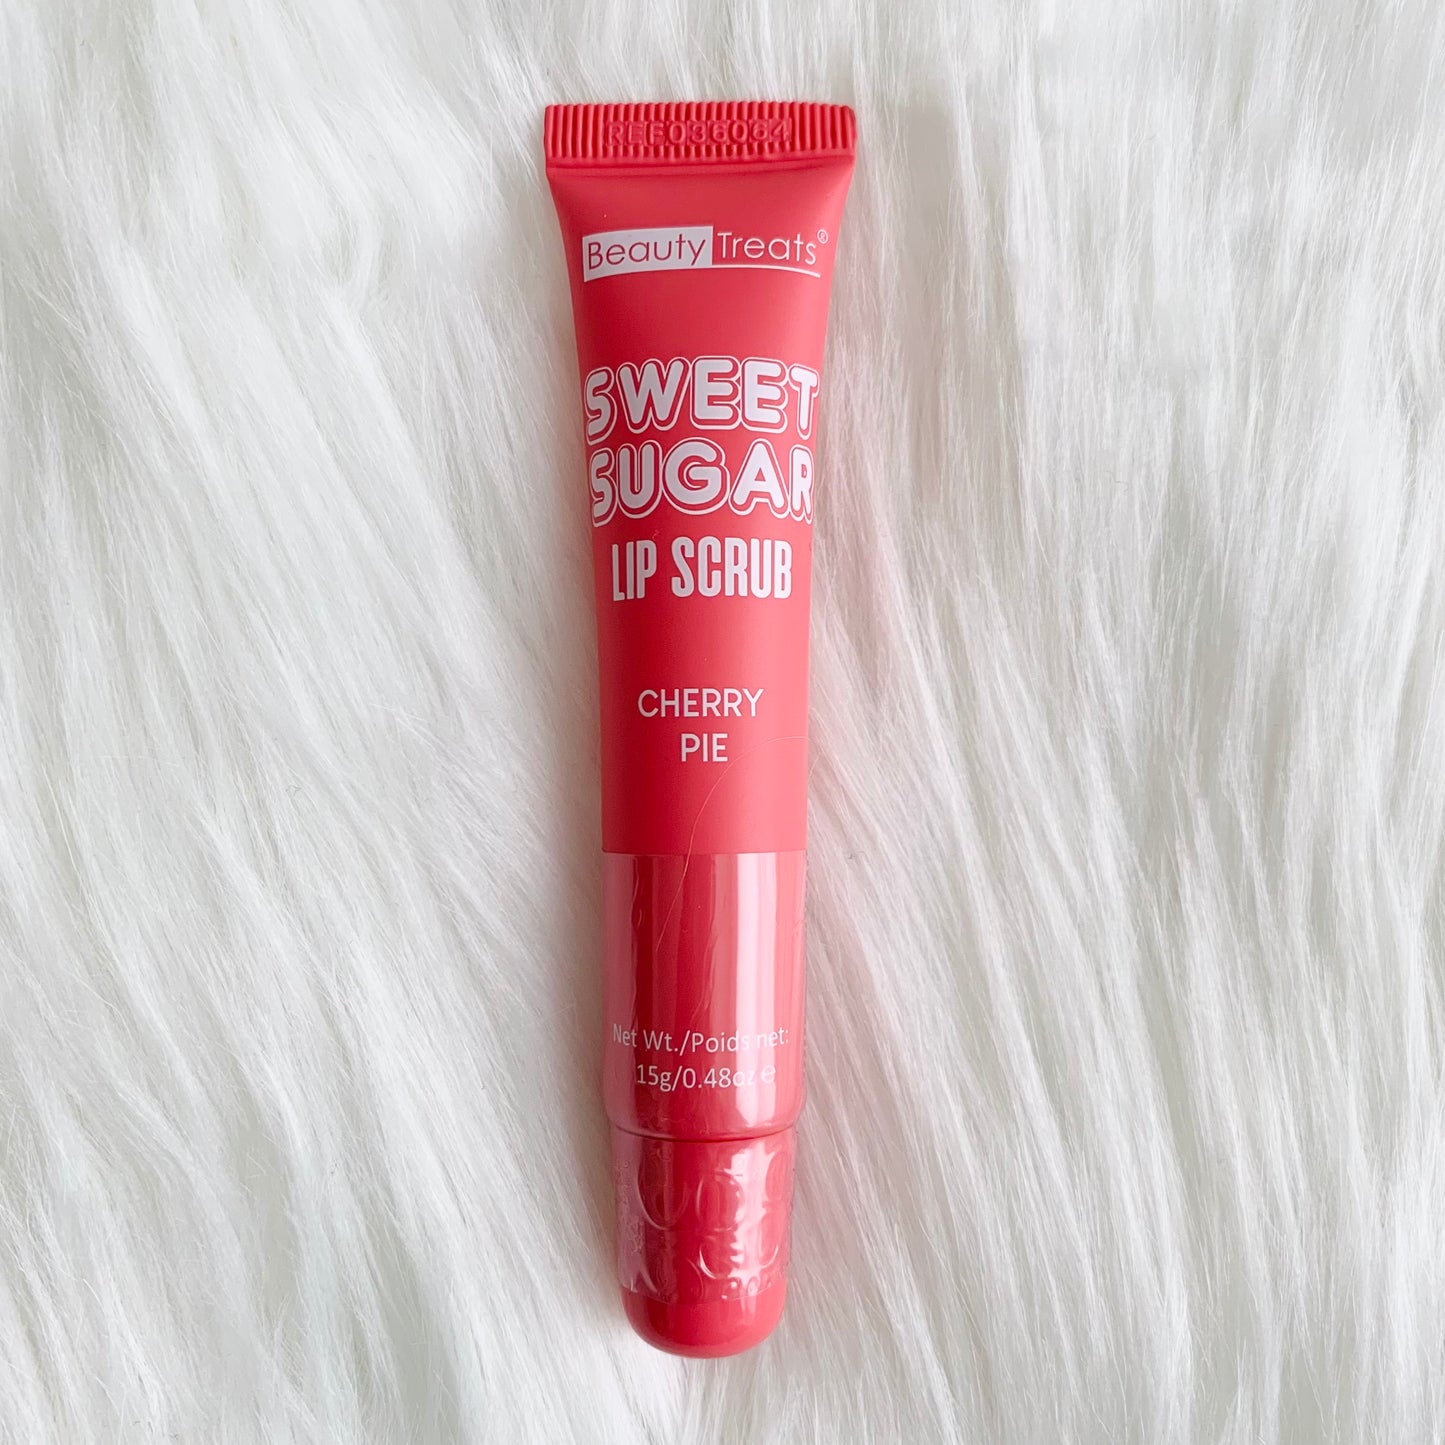 Sweet Sugar Lip Scrub